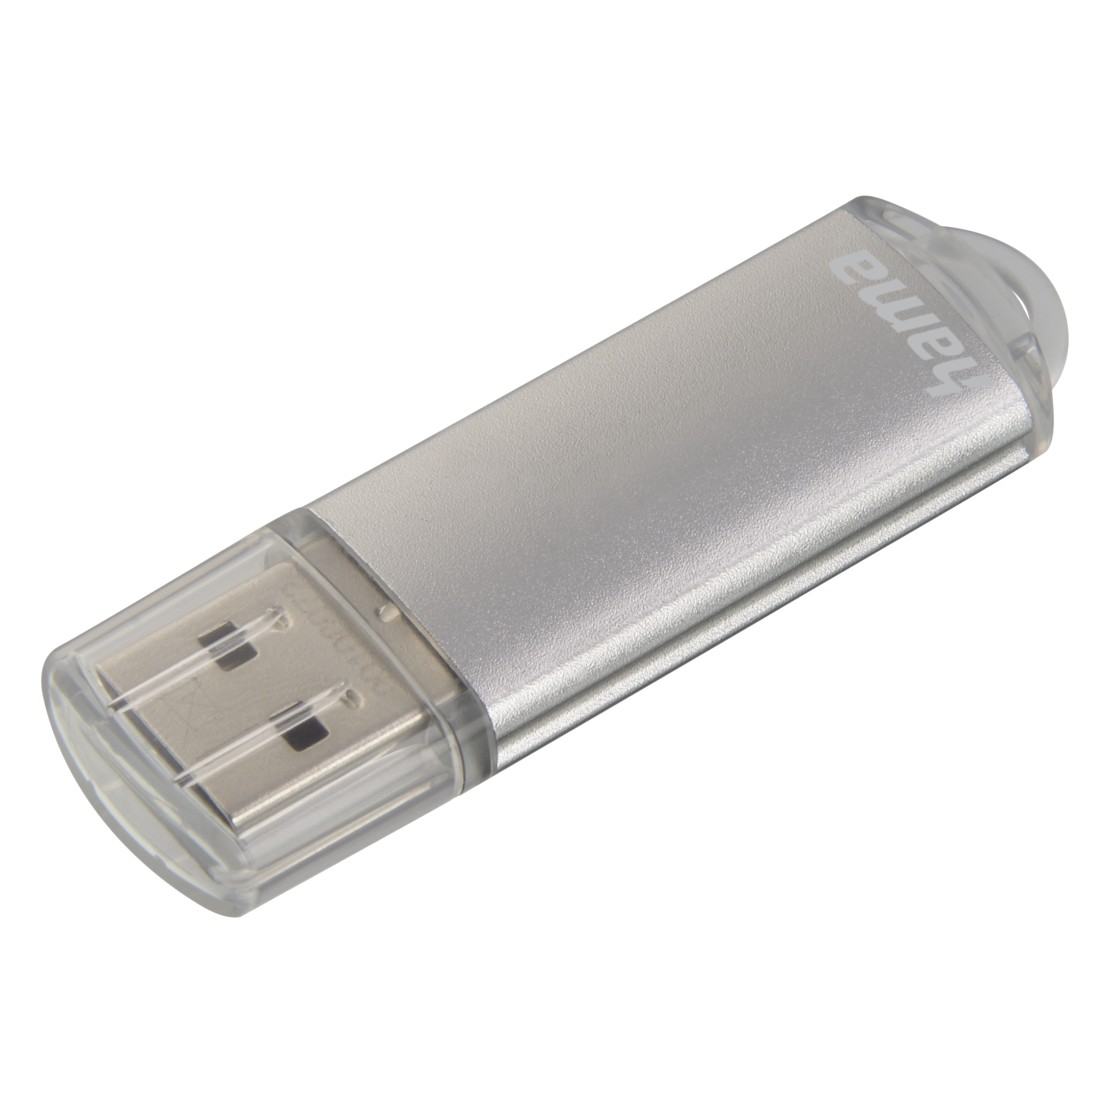 Hama USB-Stick "Laeta", USB 2.0, 128 GB, 10MB/s, Silber